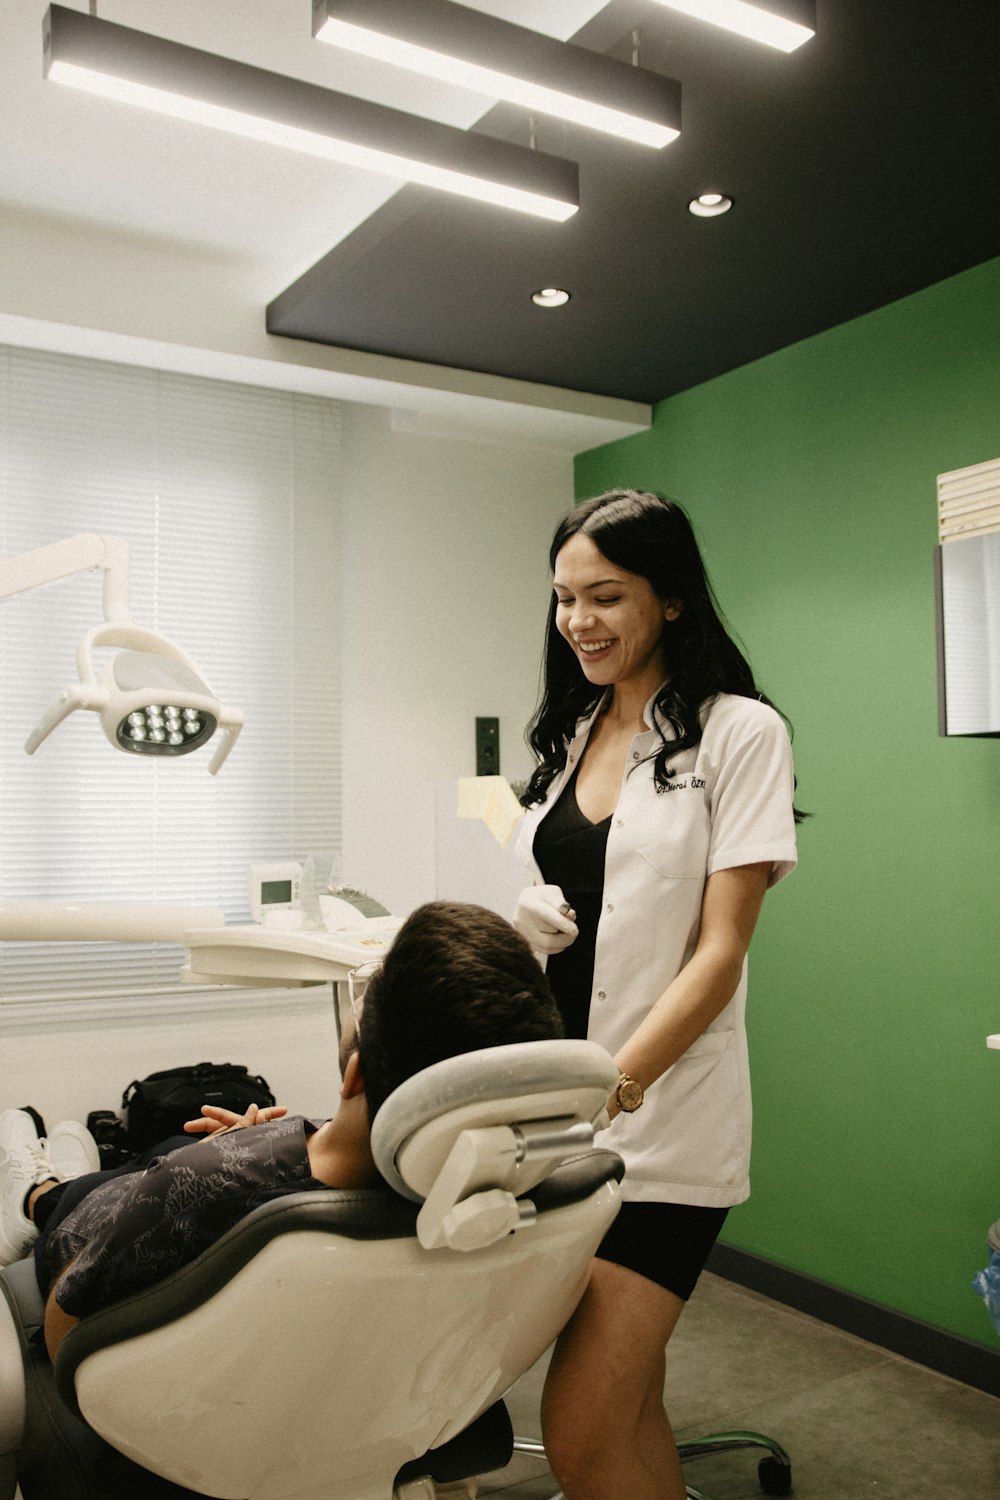 Bilder zum Thema Zahnarztstuhl  Kostenlose Bilder auf Unsplash  herunterladen